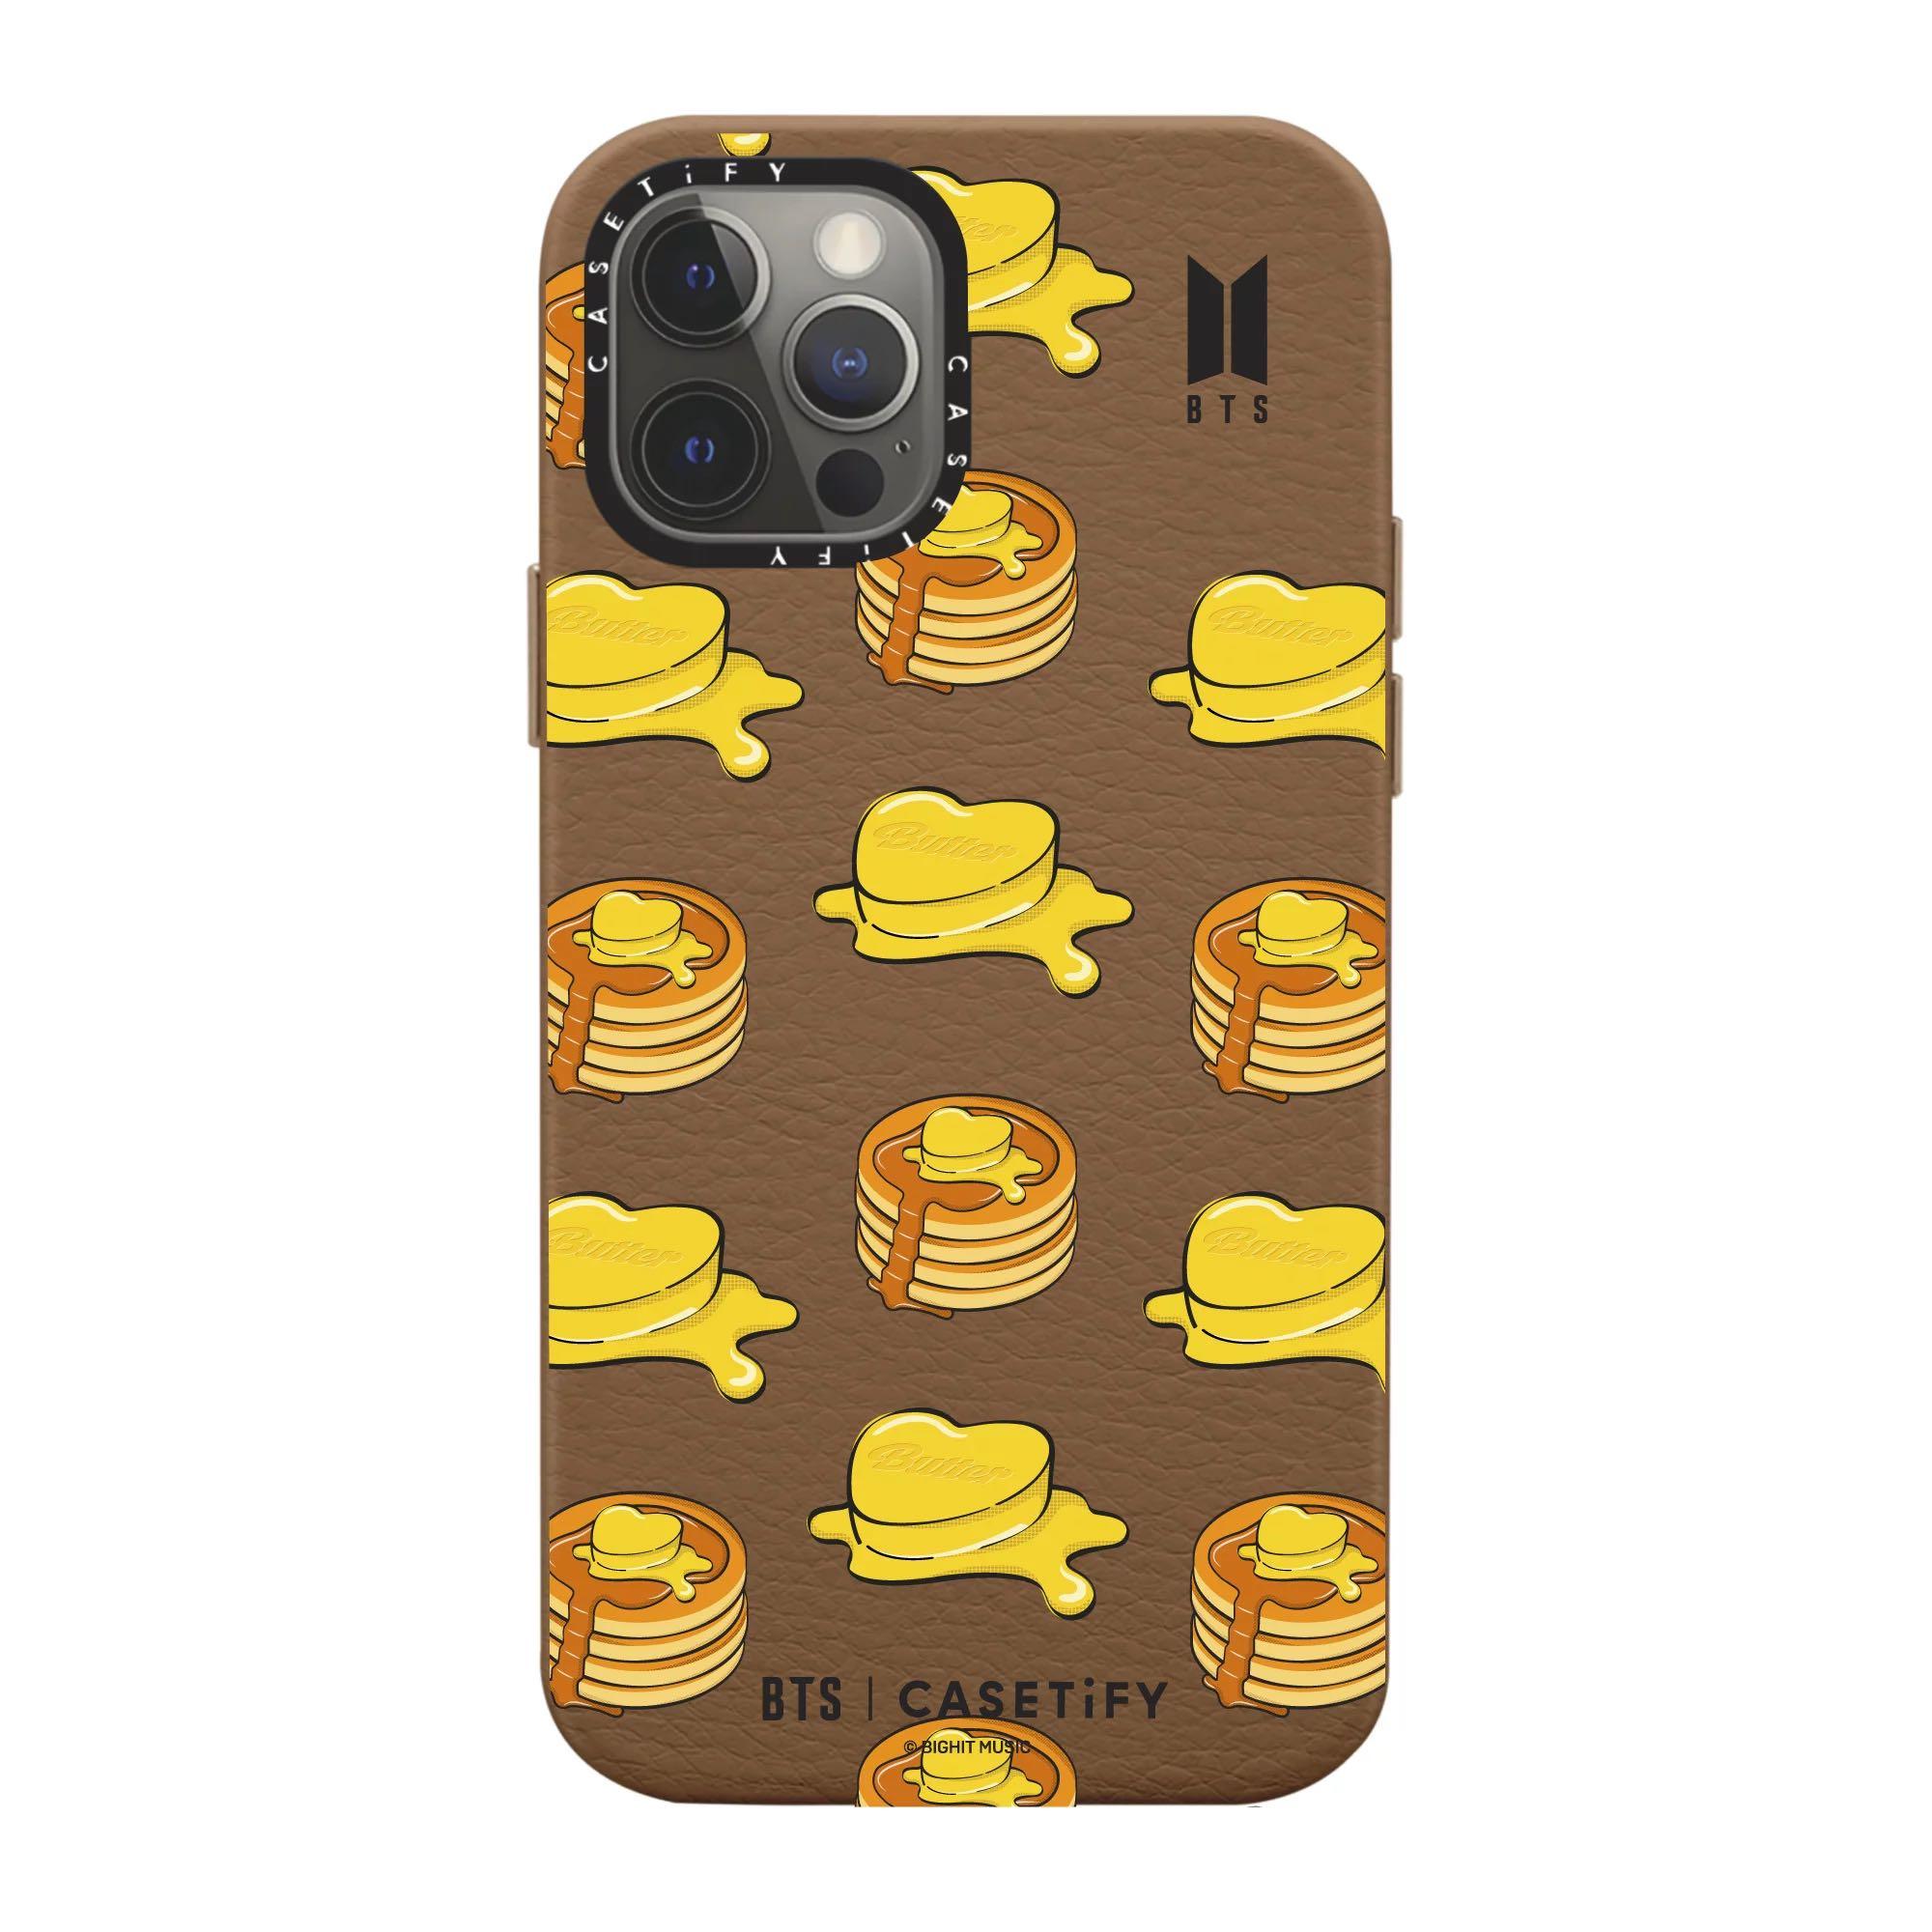 特価即納BTS CASETiFY butter iPhoneケース